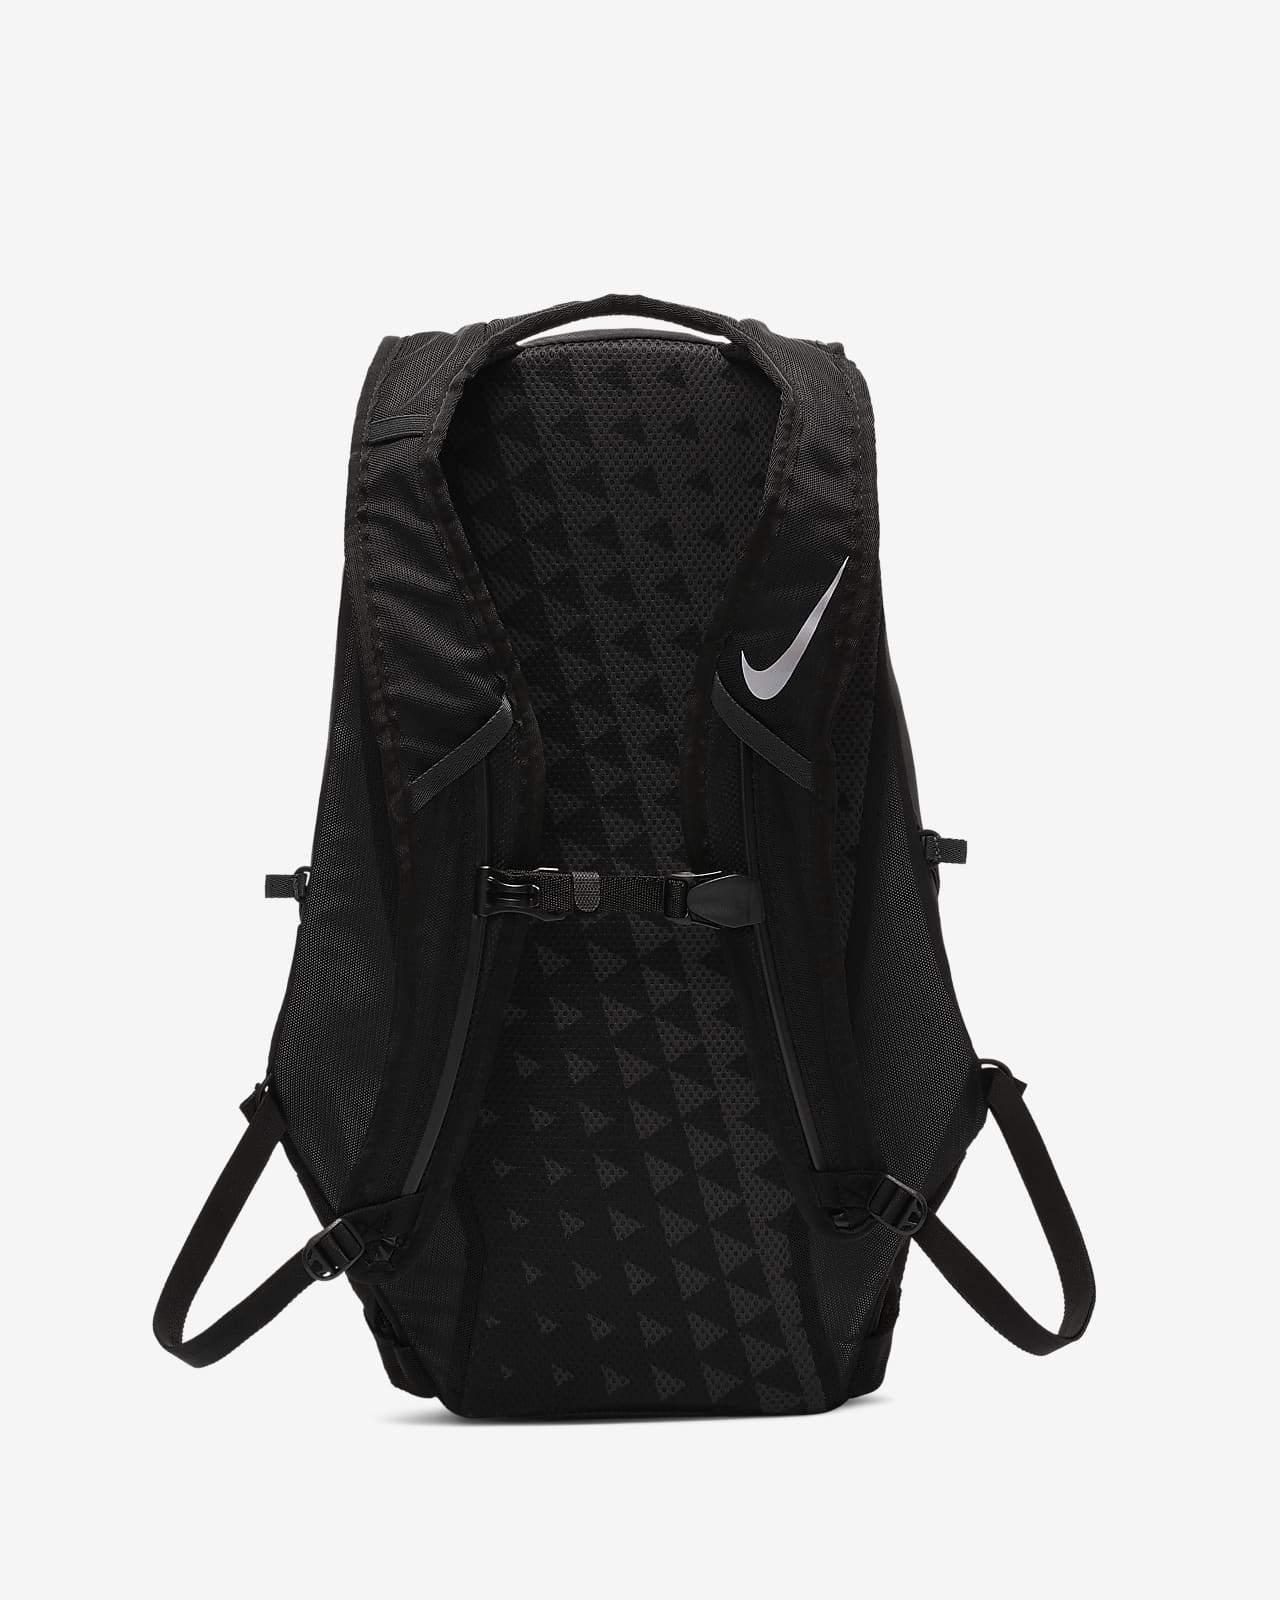 Mochila Nike Nike.com